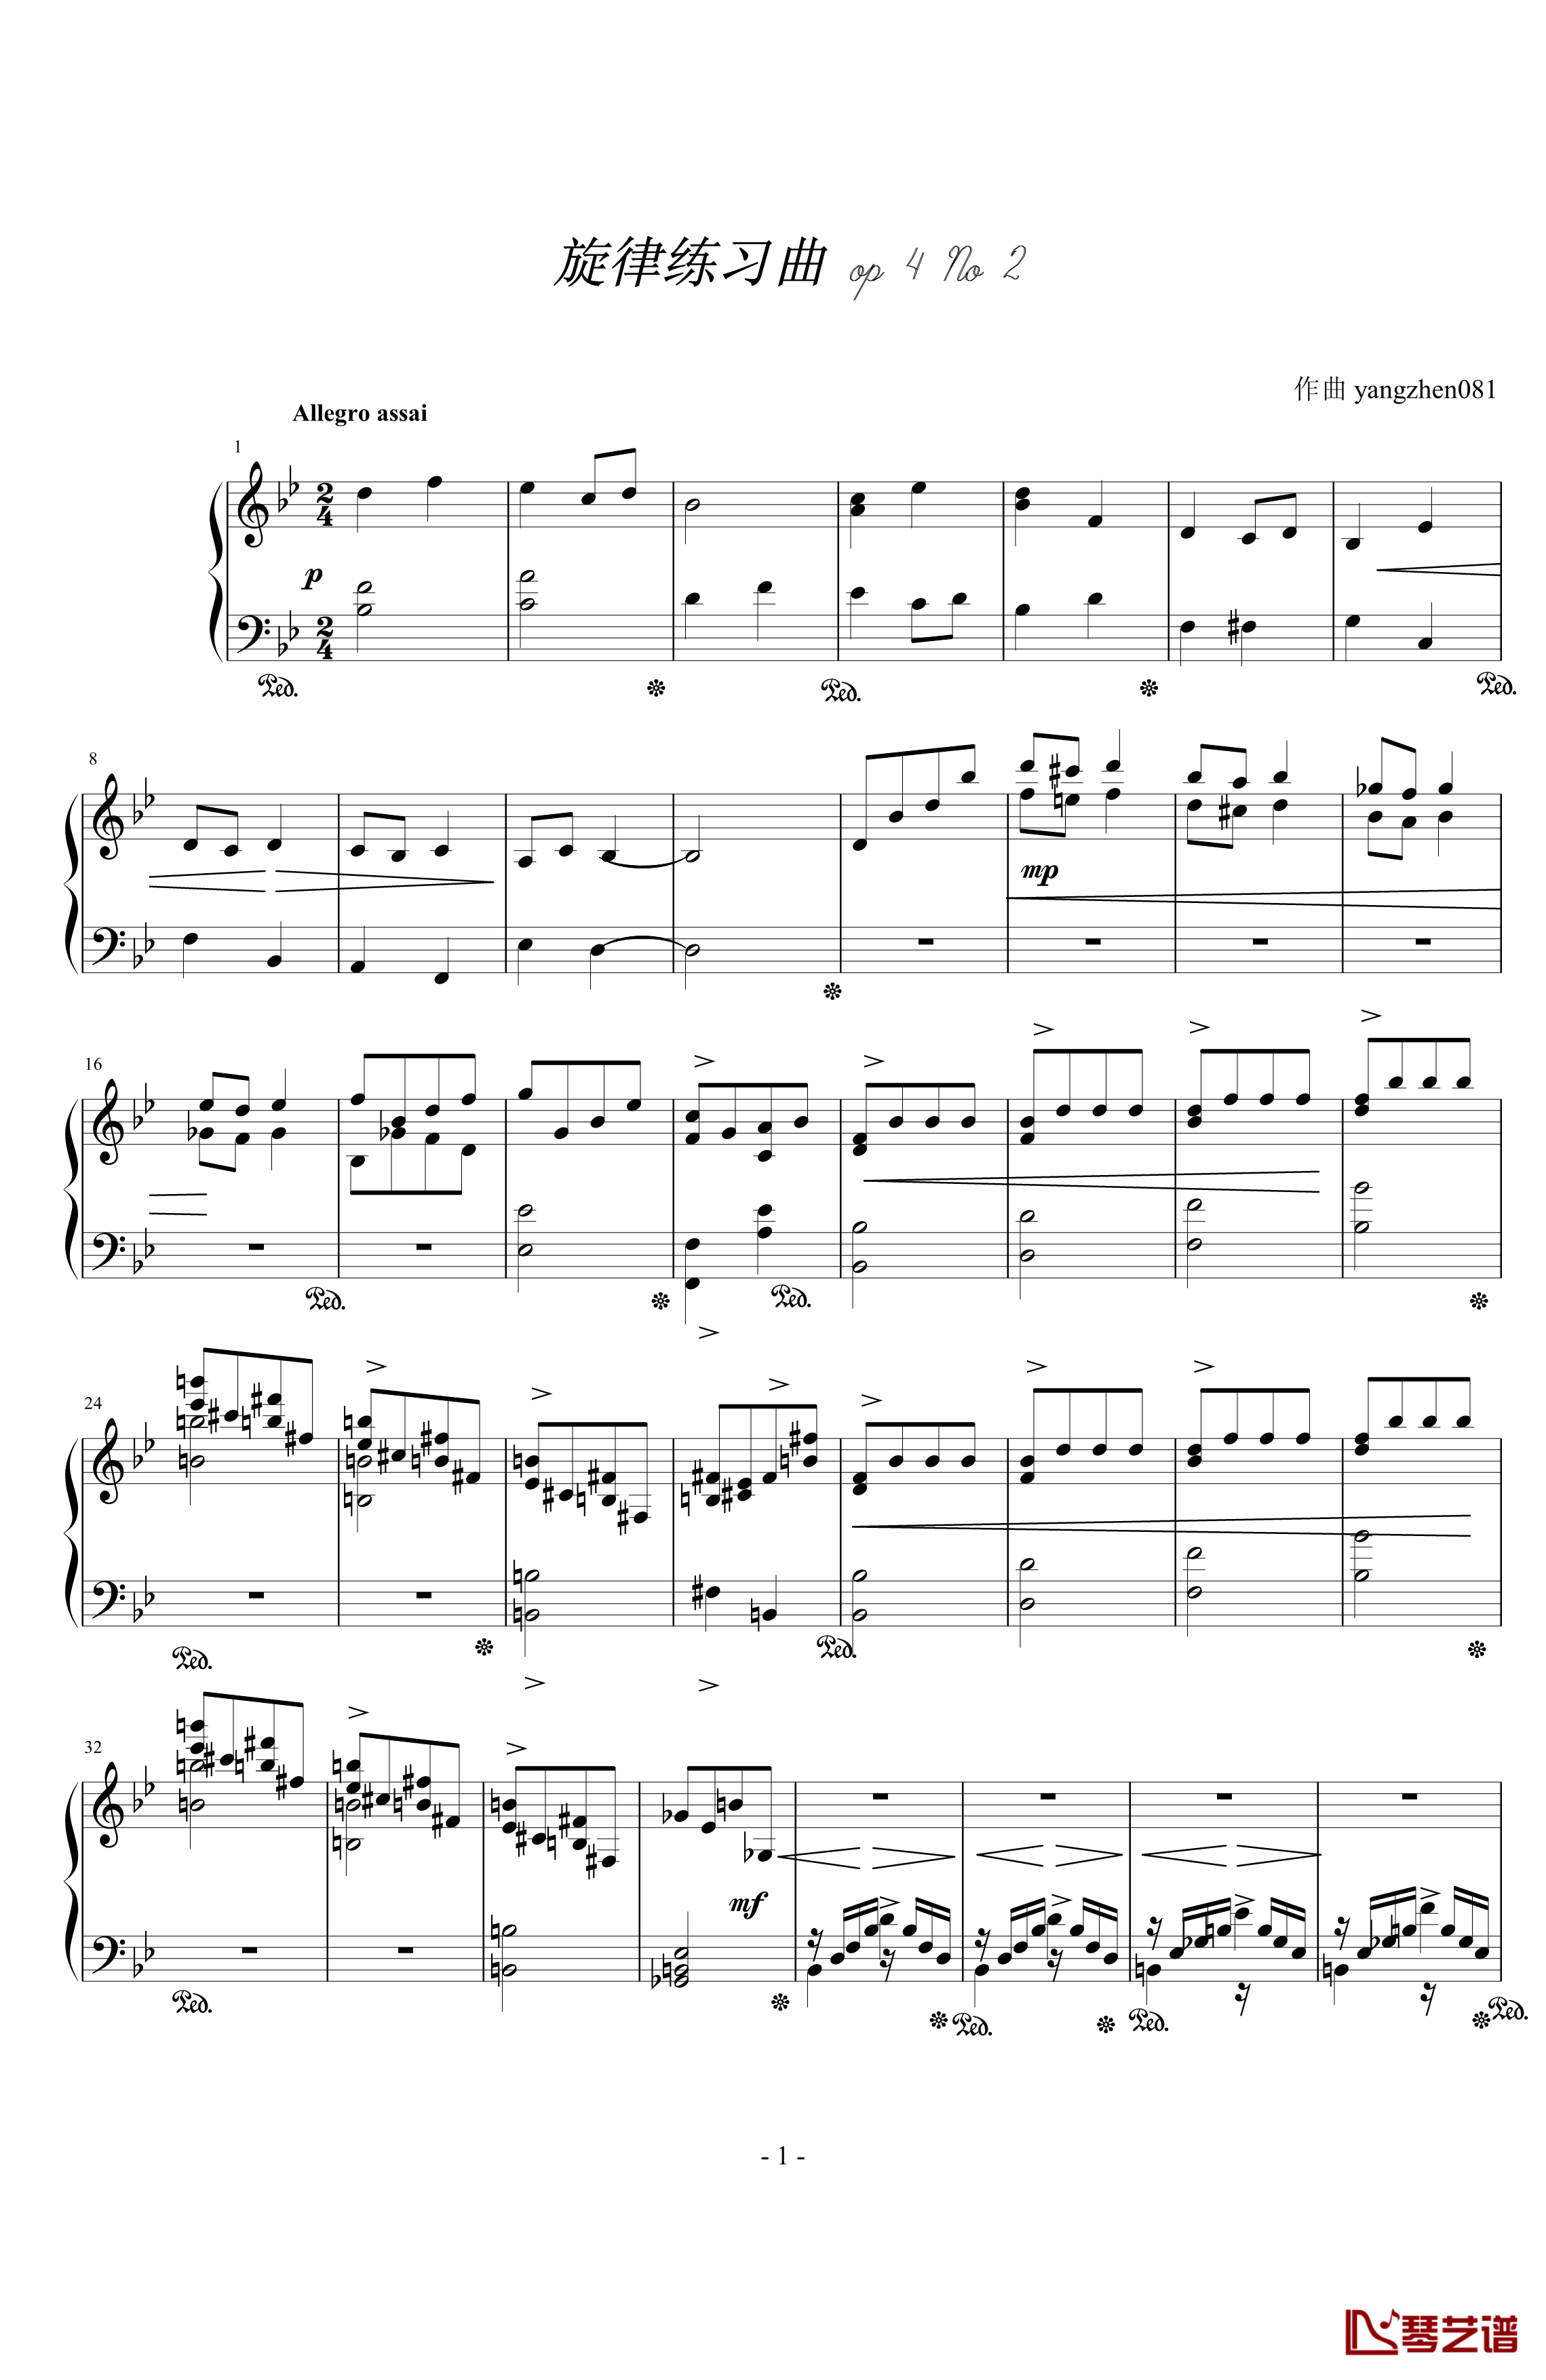 旋律练习曲op4 No 2钢琴谱-yangzhen0811